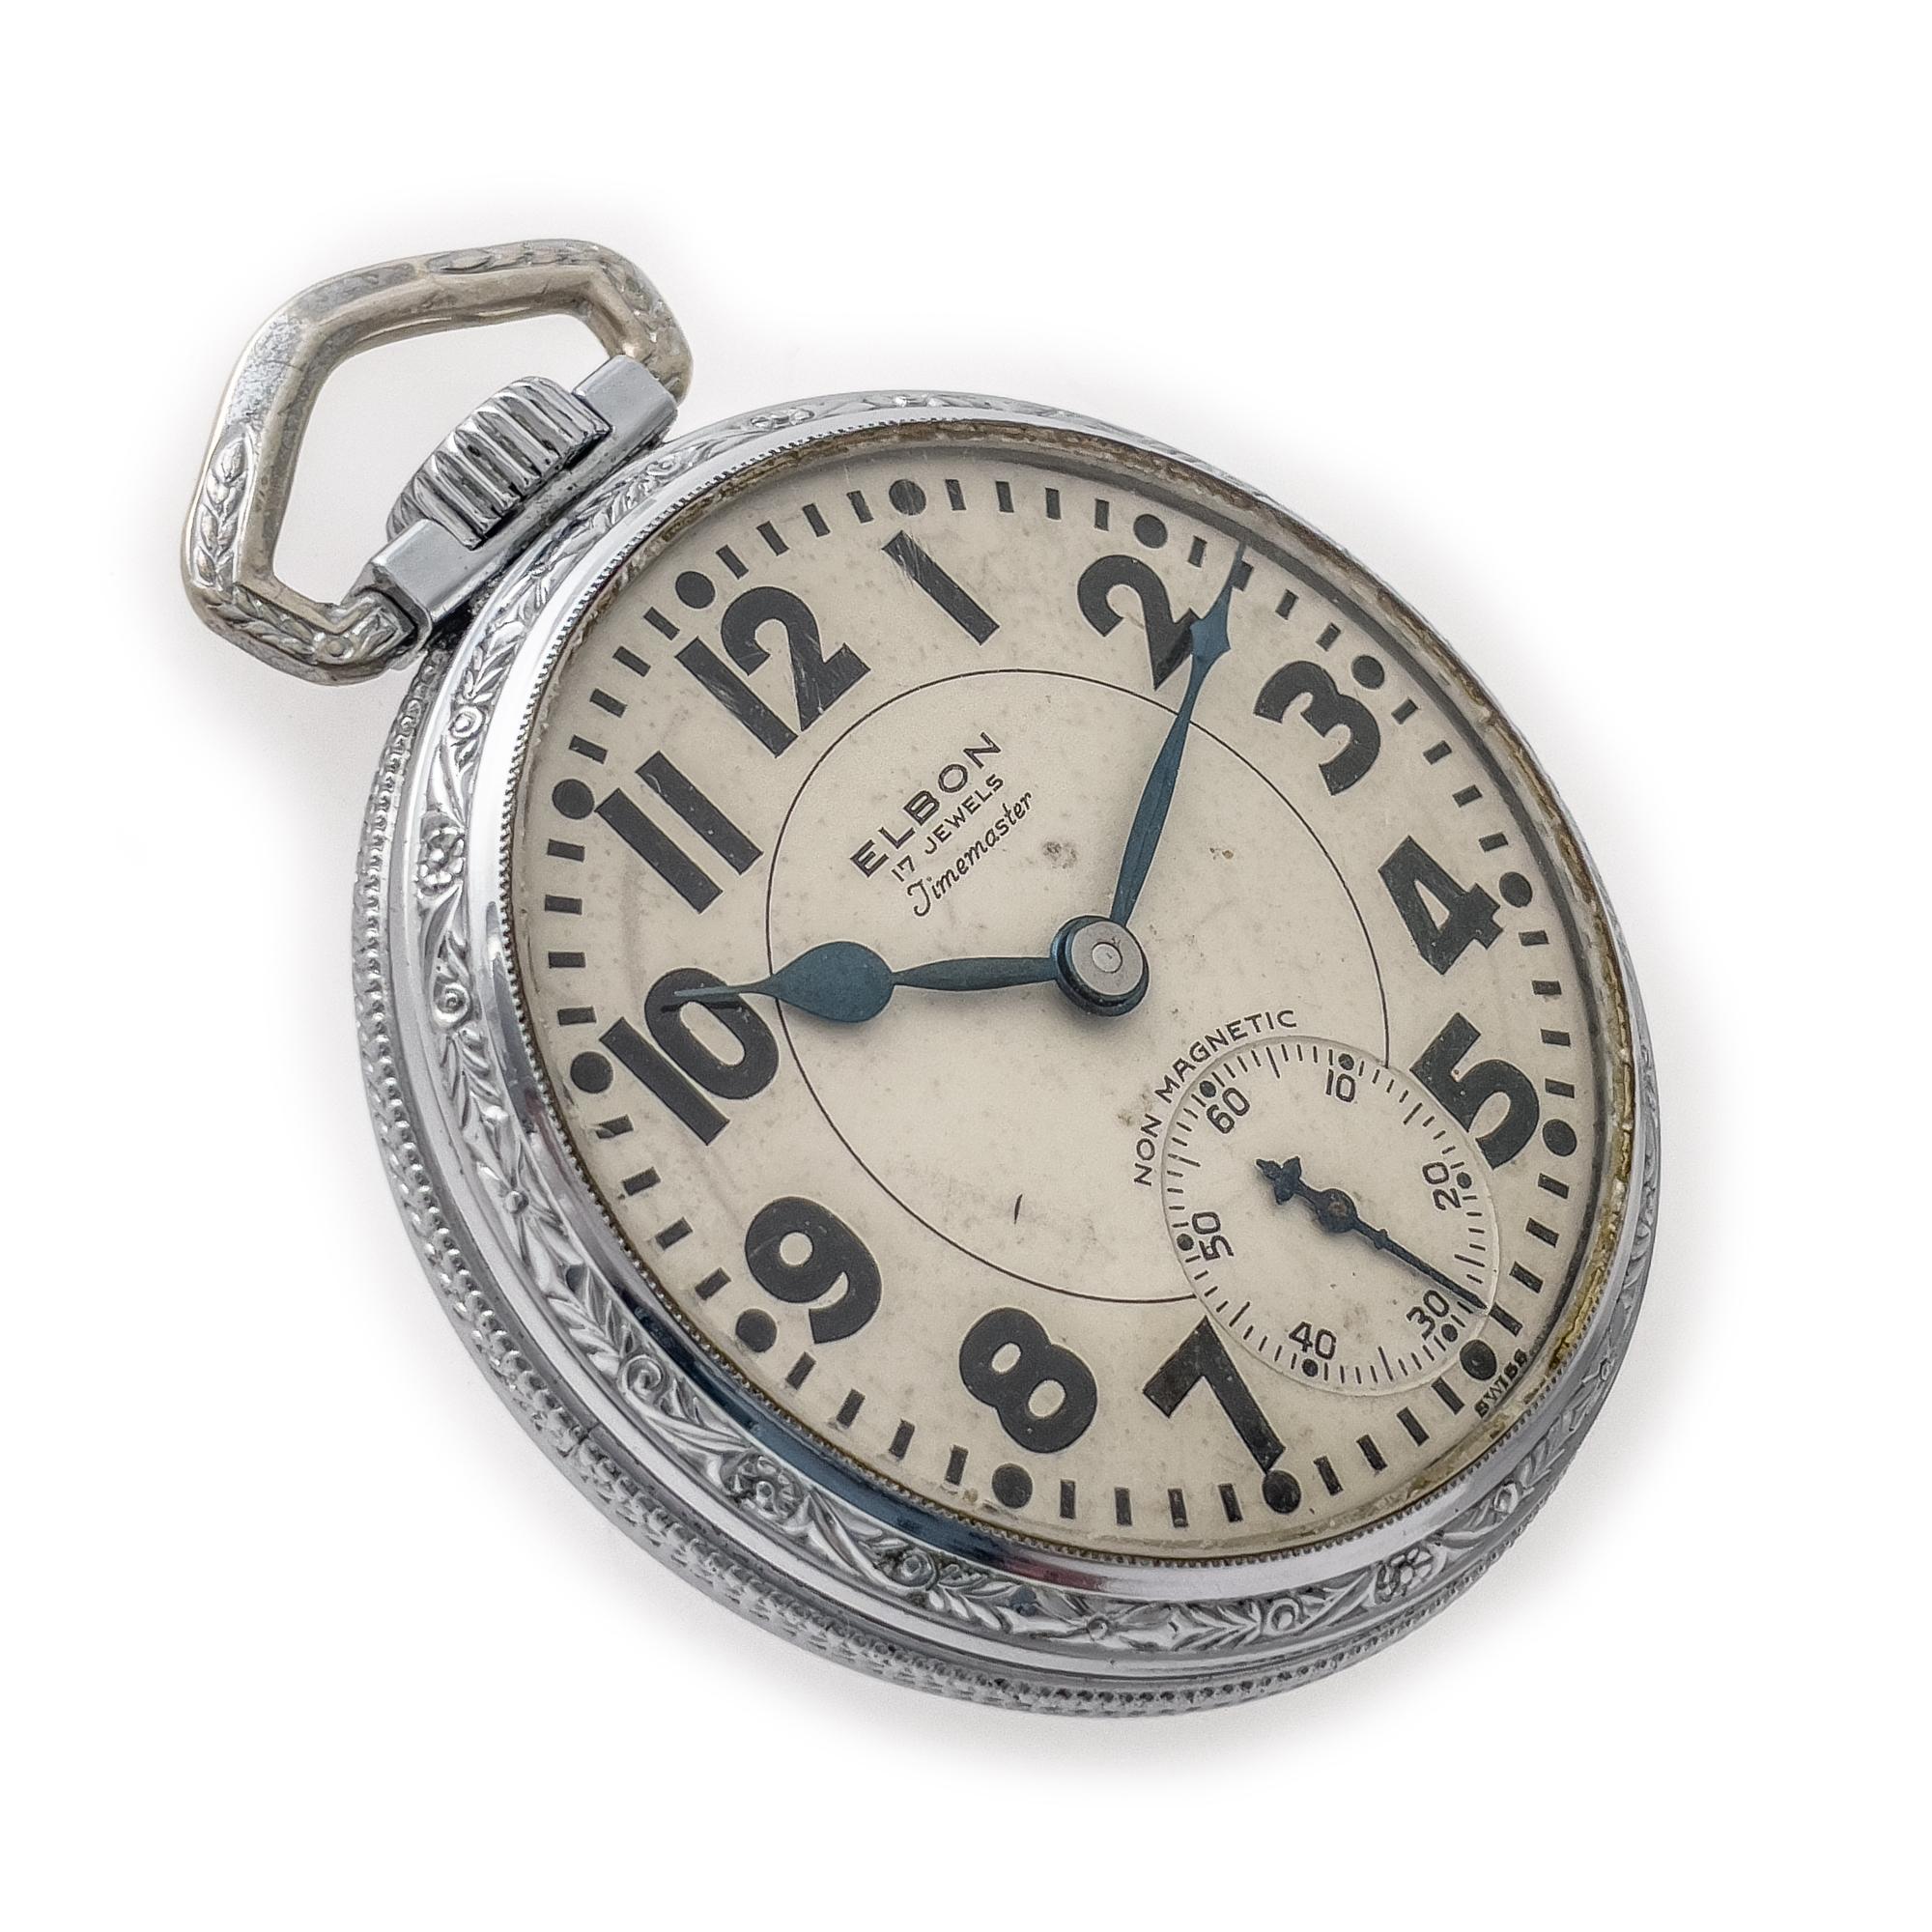 Elbon 17 Jewels Timemaster. Schweizer unangepasst 812-17 Winton Watch Company.  Gehäuse mit der Unterschrift 